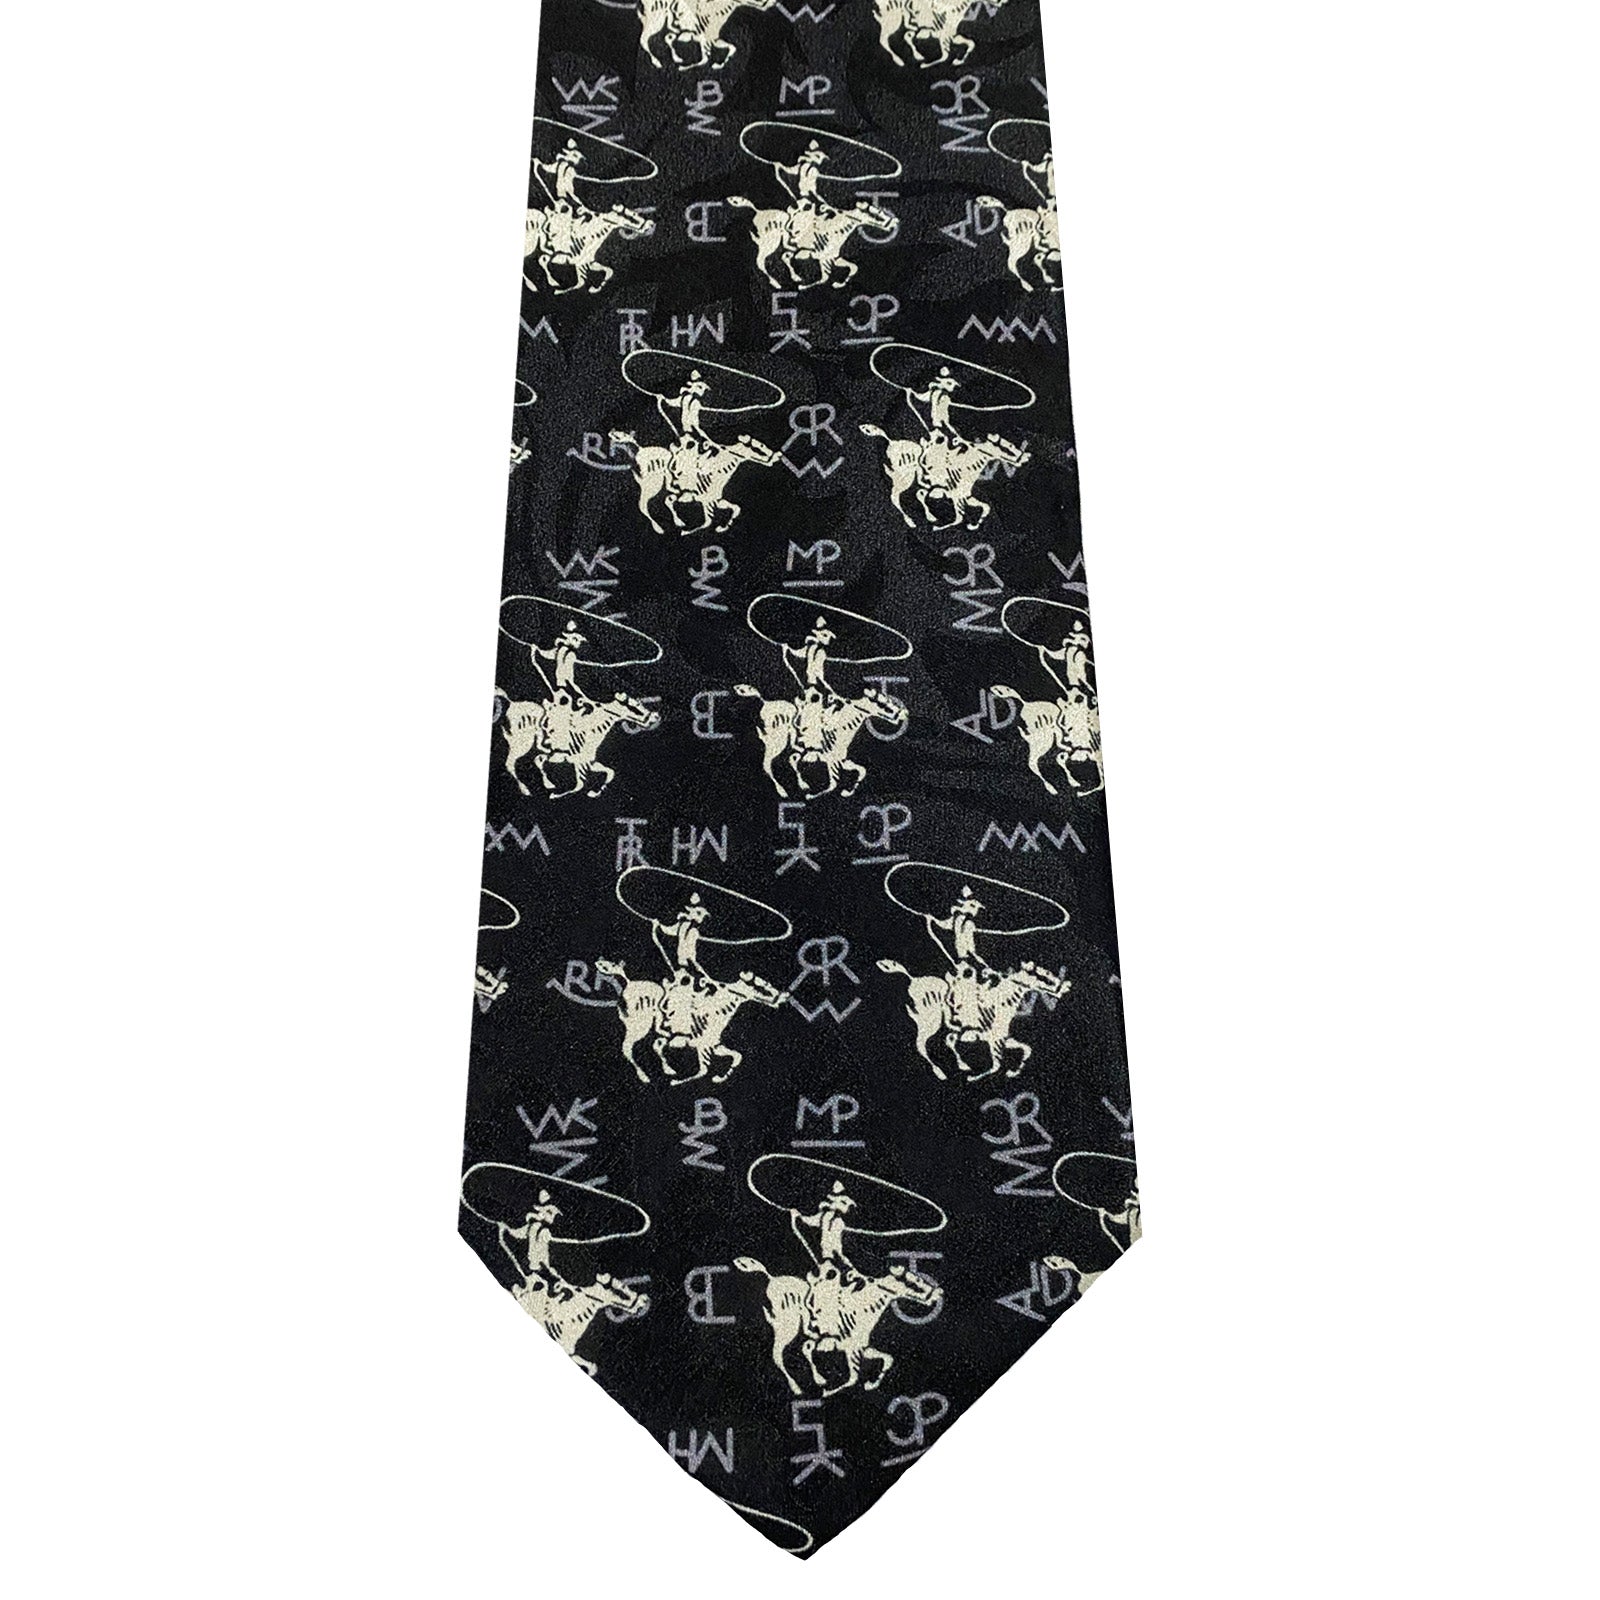 Louis Vuitton Plaids & Checks Tie Ties for Men for sale